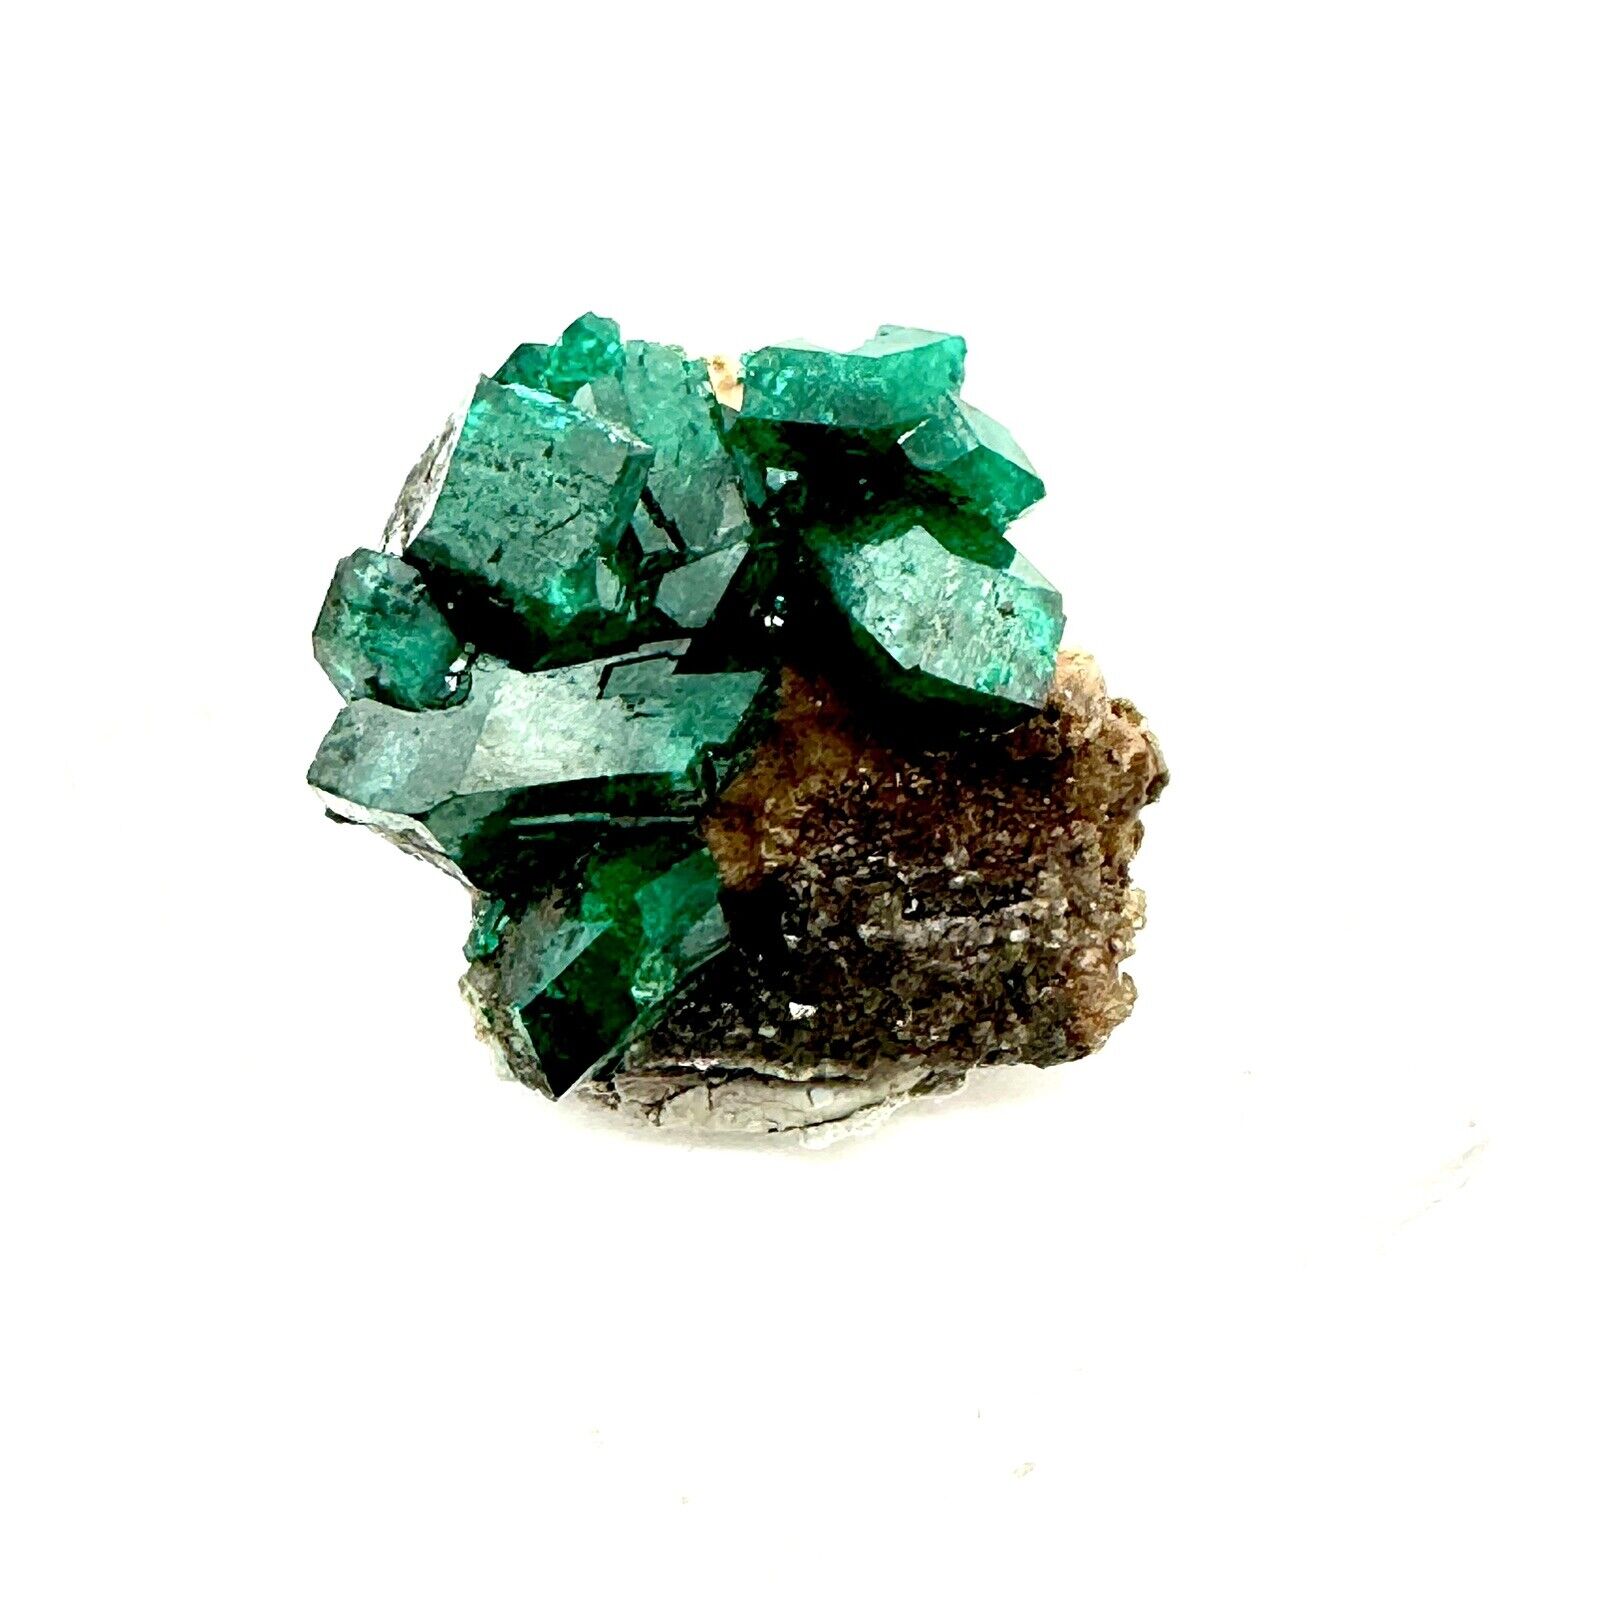 Matrix Dioptase Crystal Mineral Specimen DR Congo Africa Display Cluster 5 Gram